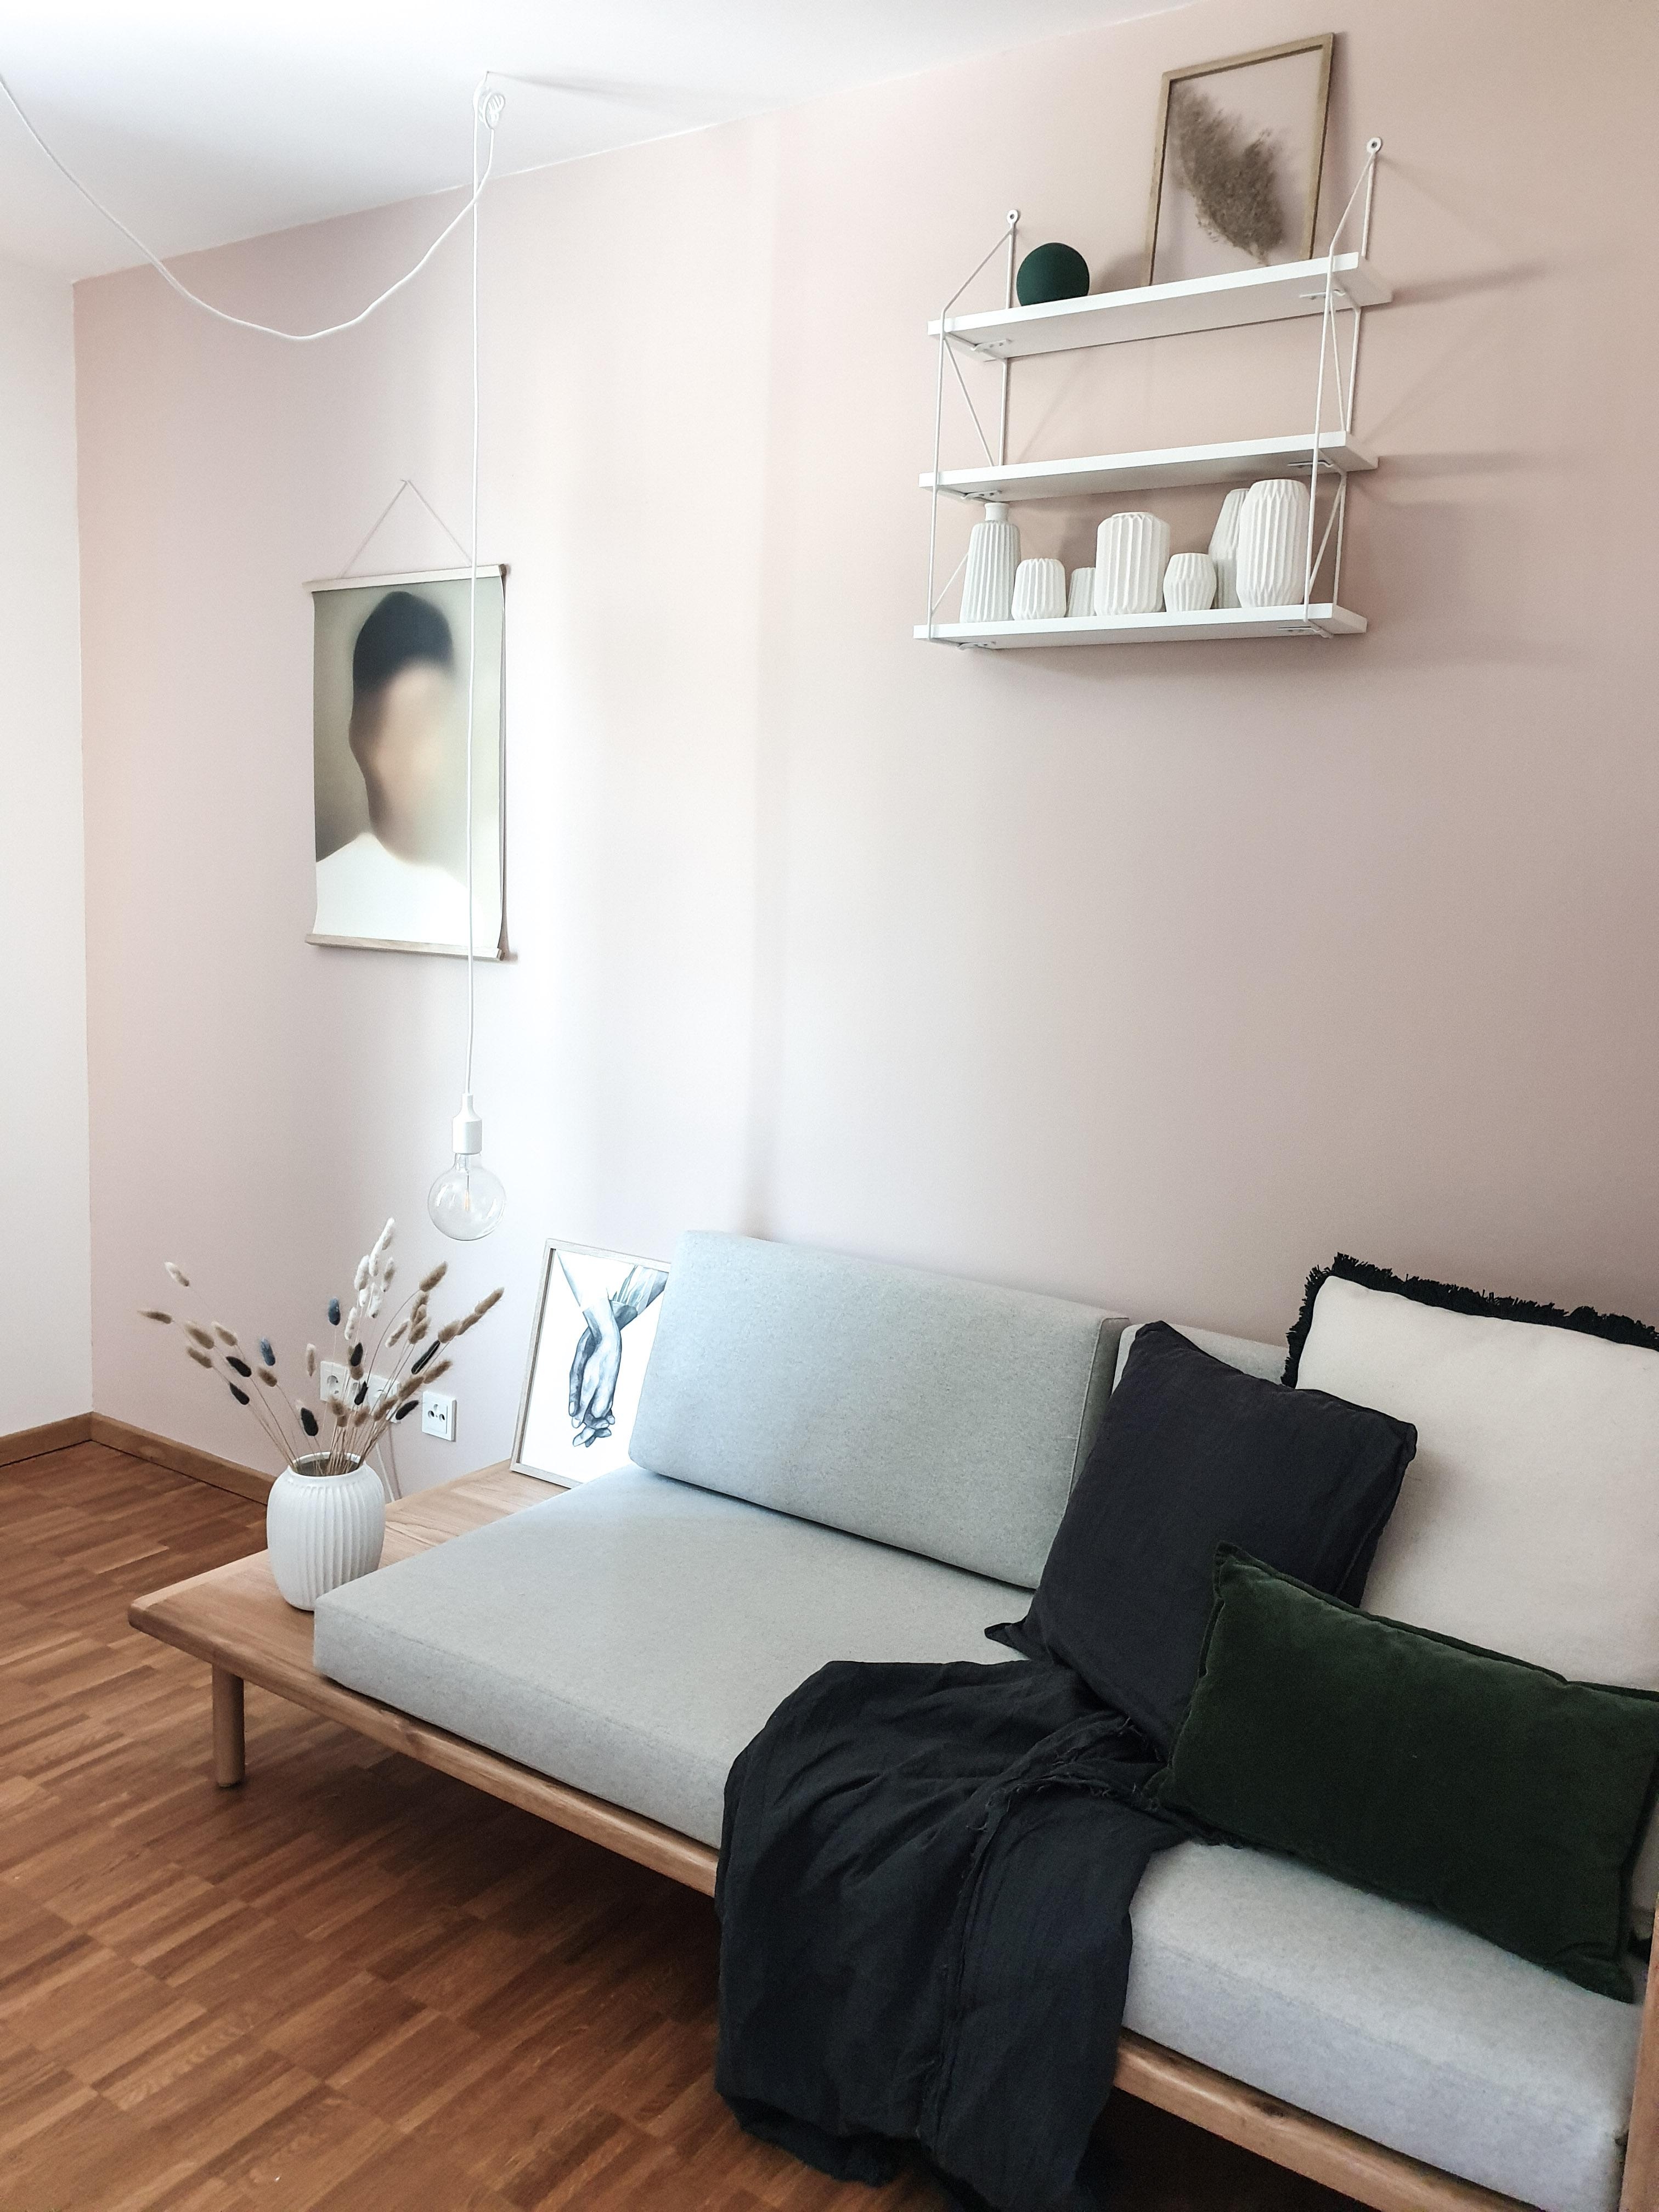 Verliebt in unser neugestaltetes Gästezimmer 

#sofa #daybed #wandfarbe #